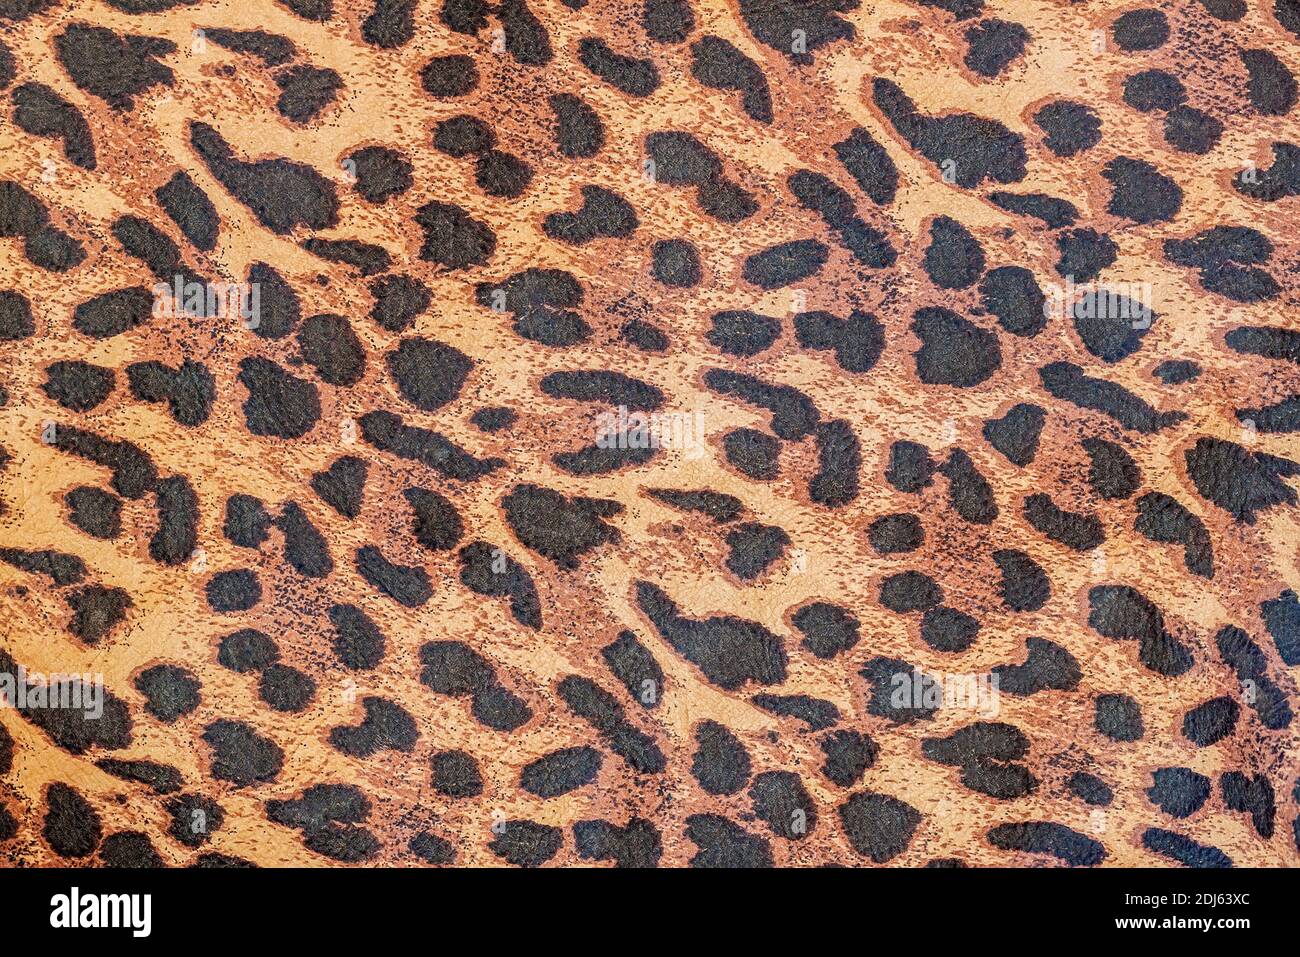 Leopard Seamless Animal Skin and Fur Textures, Closeup Natural